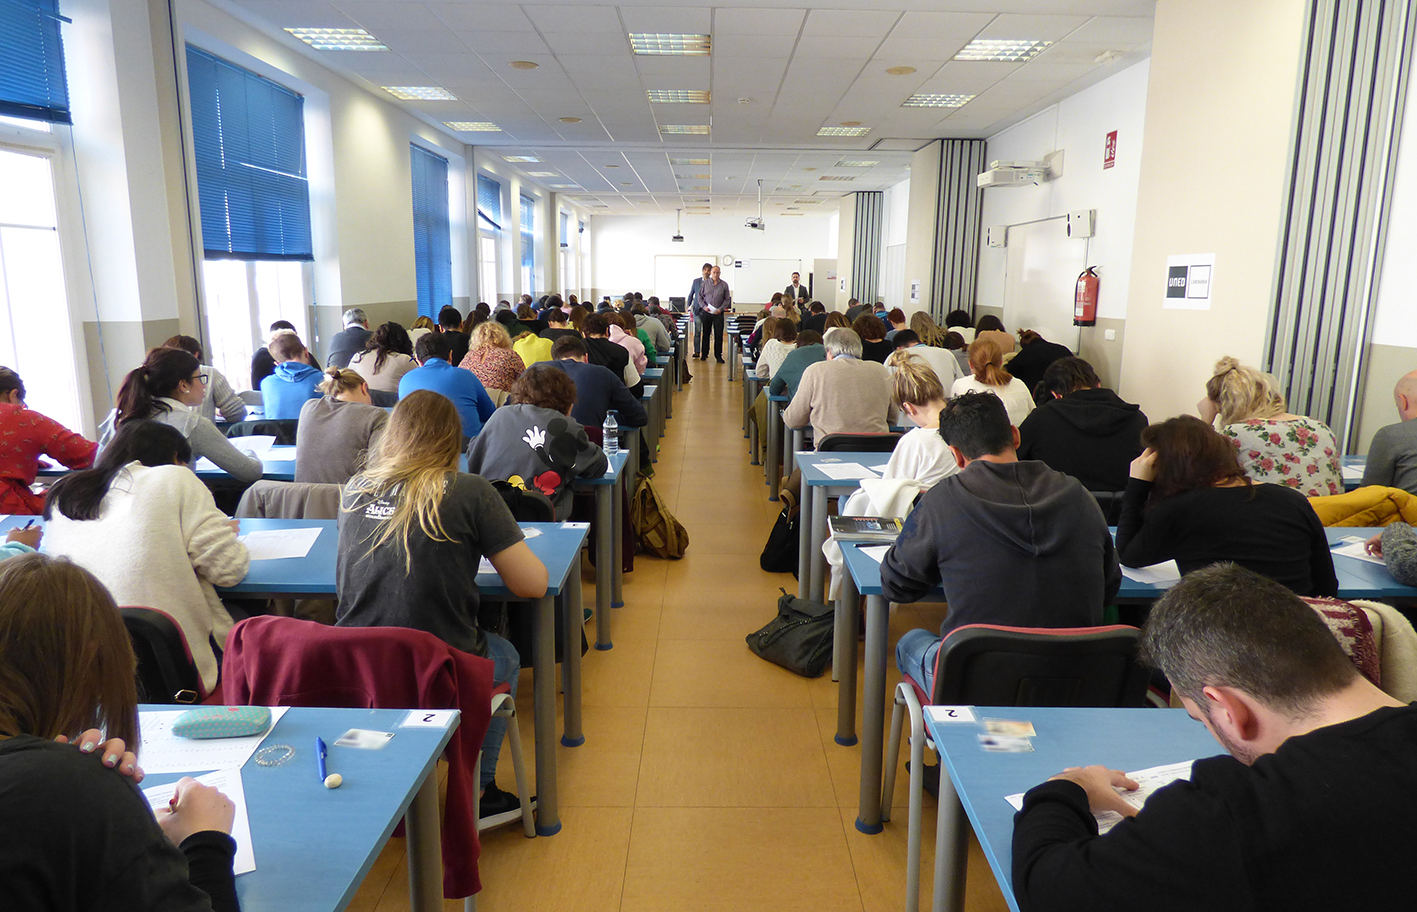 Universitarios en una sala haciendo un examen